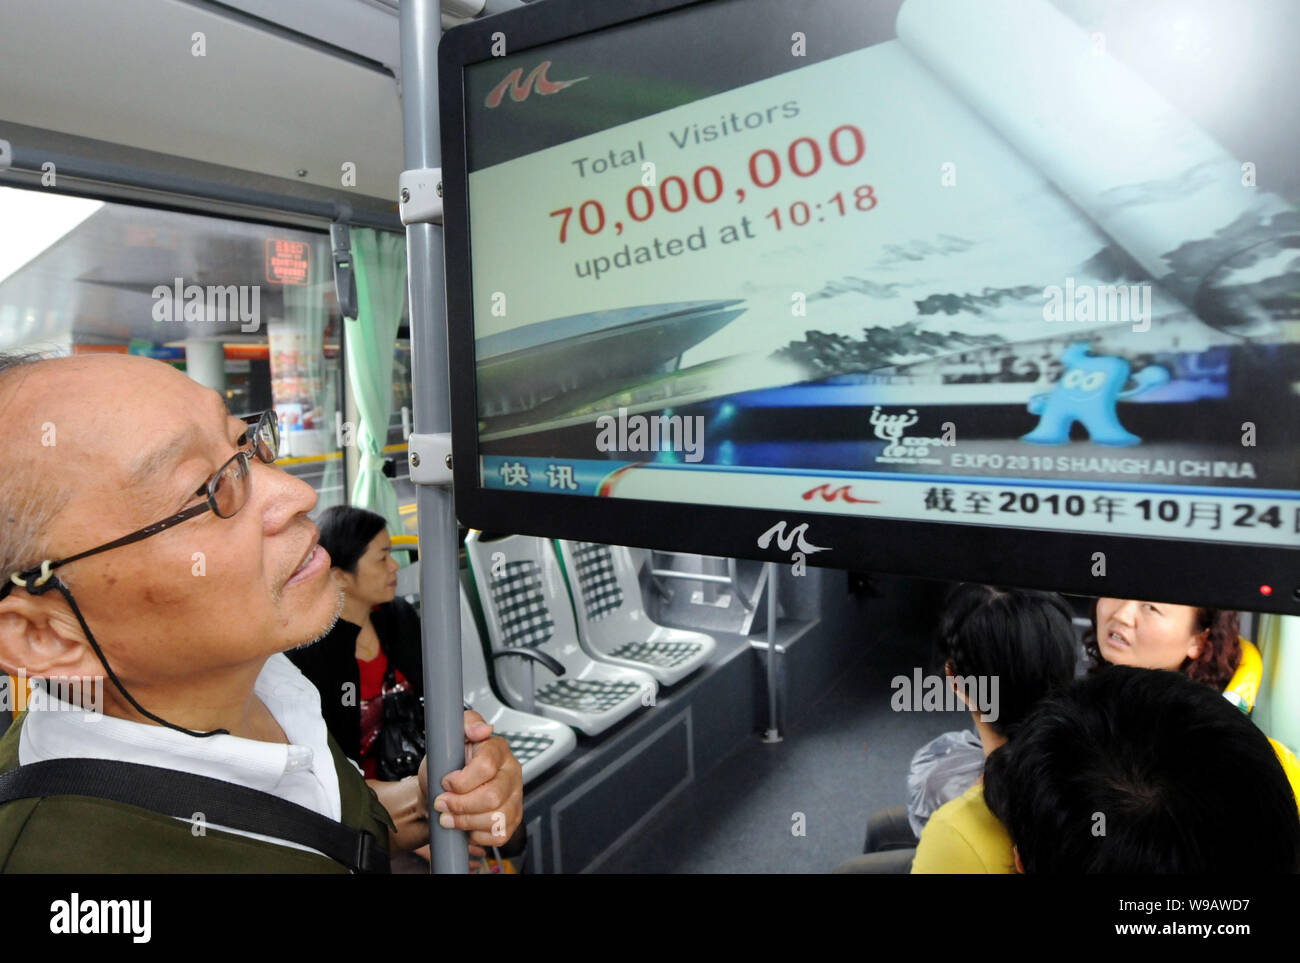 Einen chinesischen Pkw Uhren einer Anzeige, die die Zahl der Besucher der Shanghai Expo Park 70 Millionen mehr als in einem Bus in Shanghai, China, 24 Oc Stockfoto